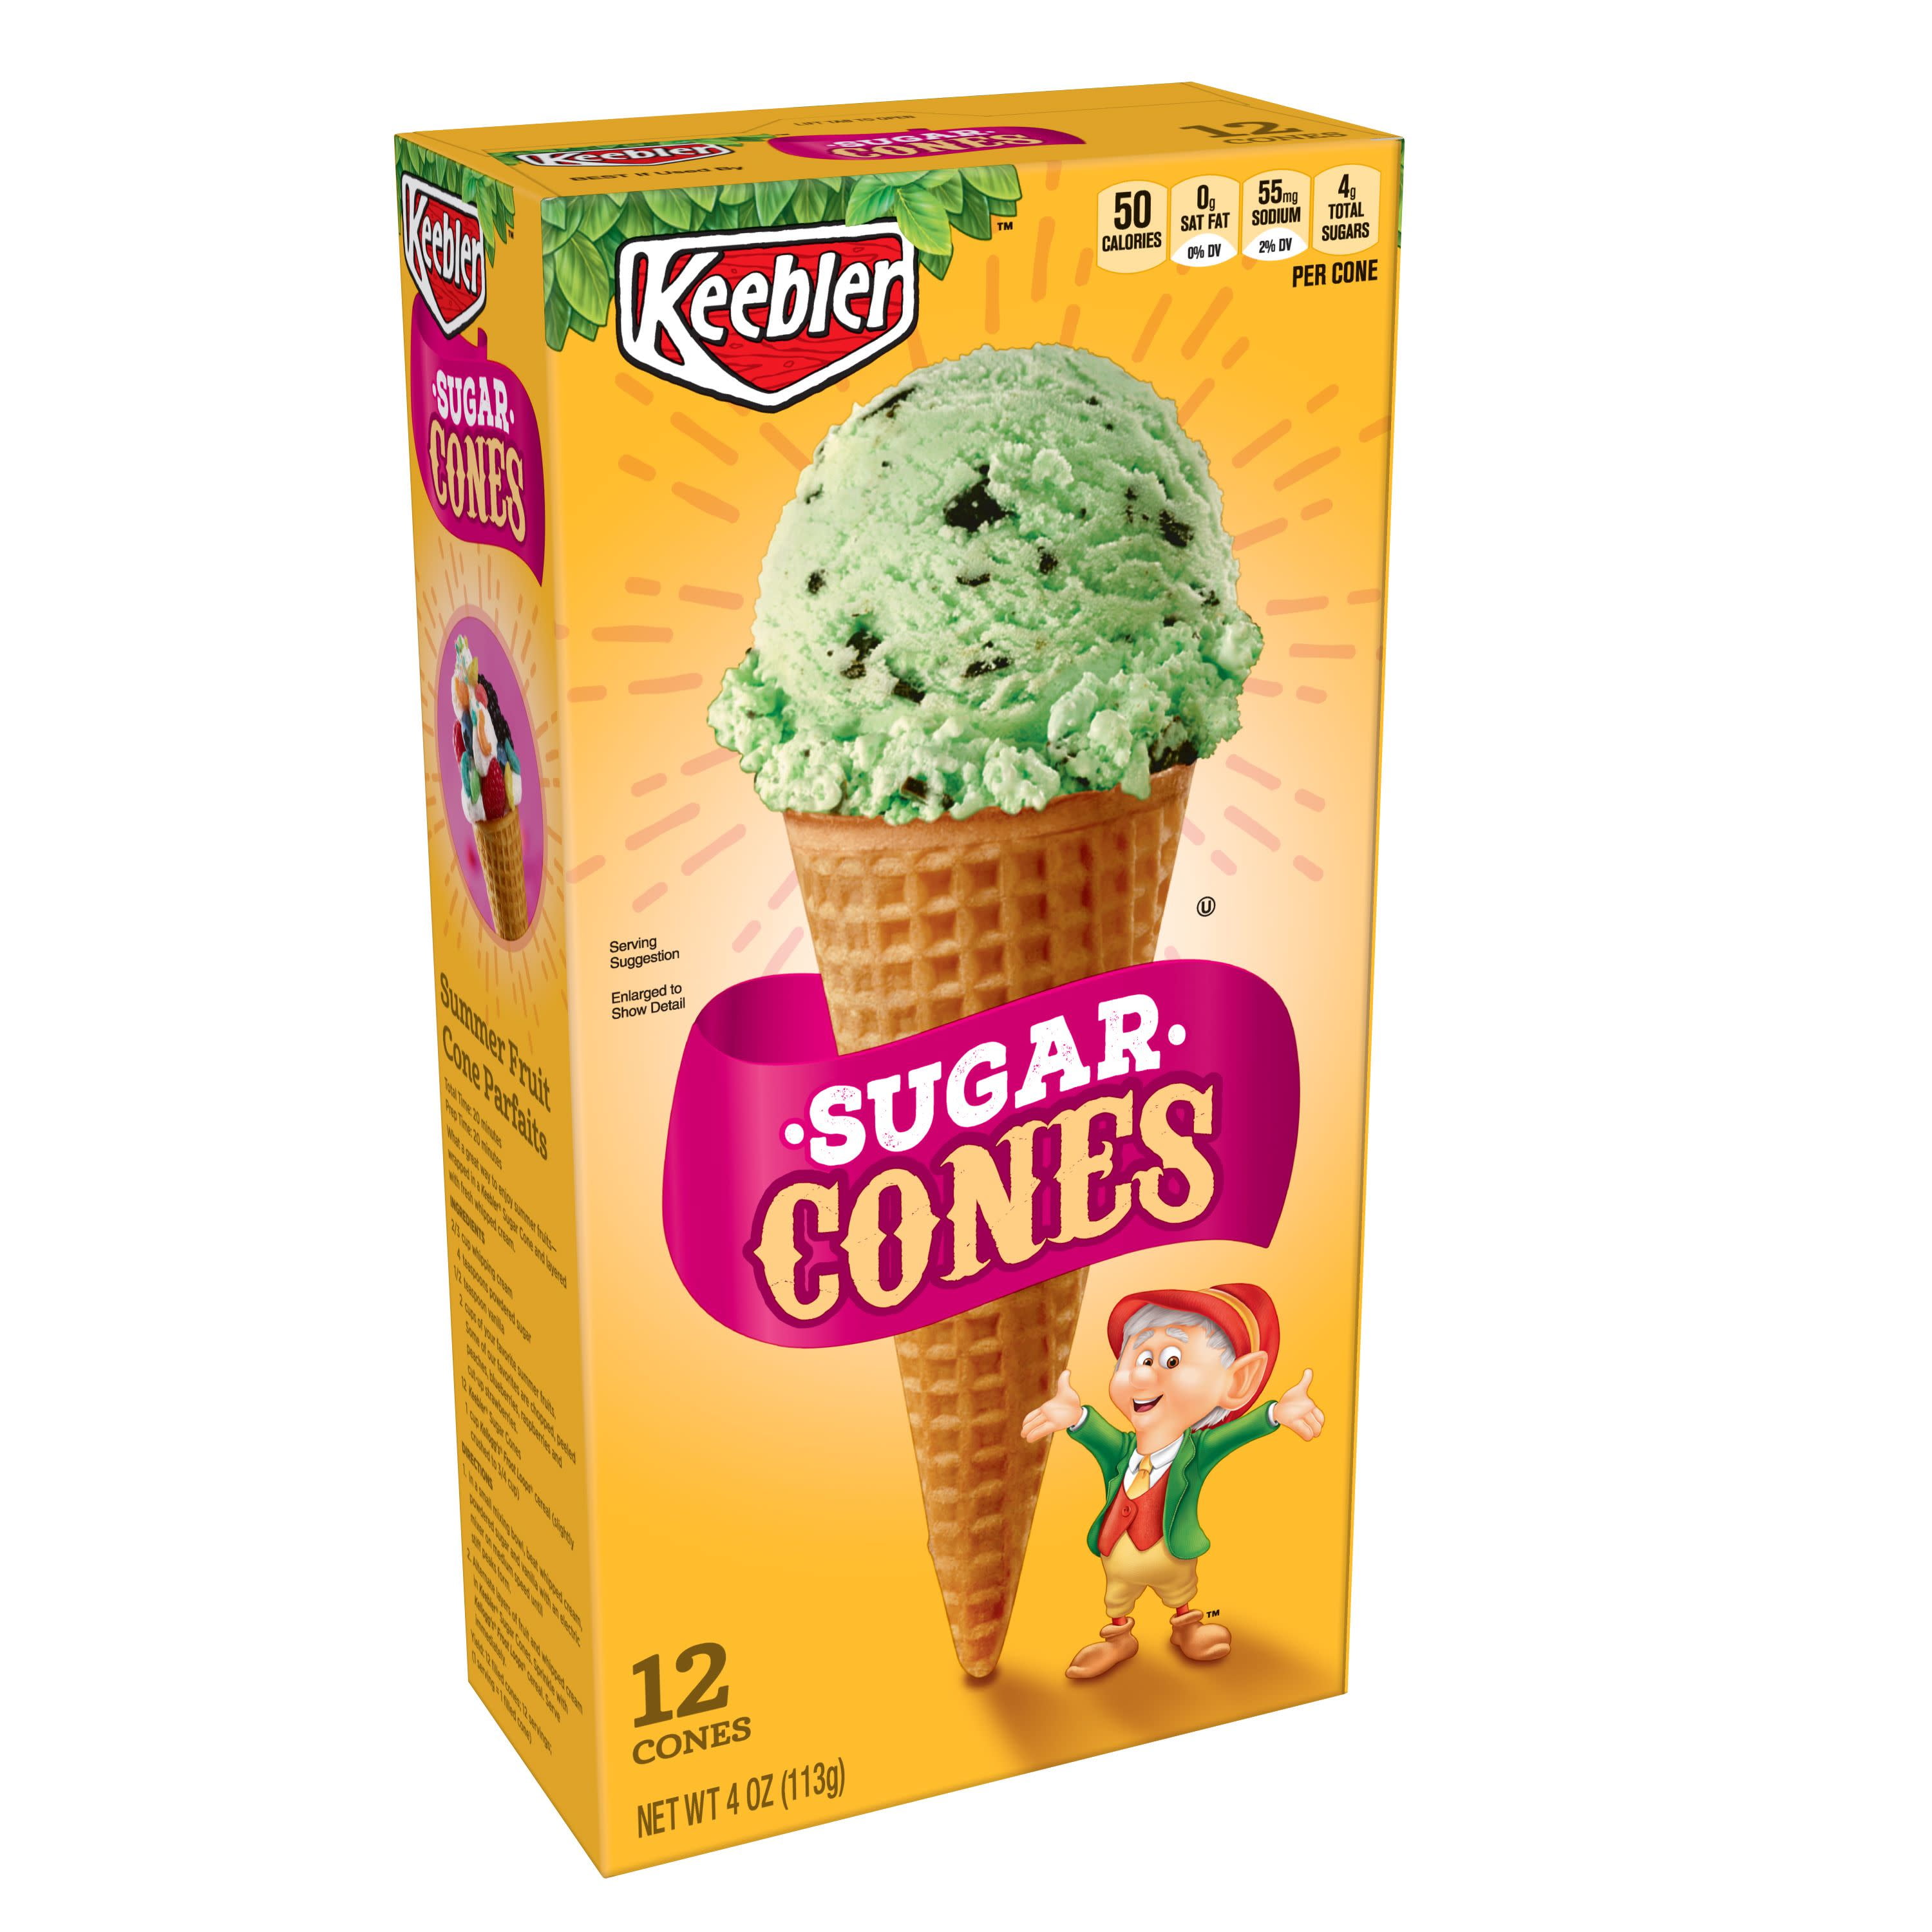 Keebler Sugar Cones Original Icecream Cone 4 oz box